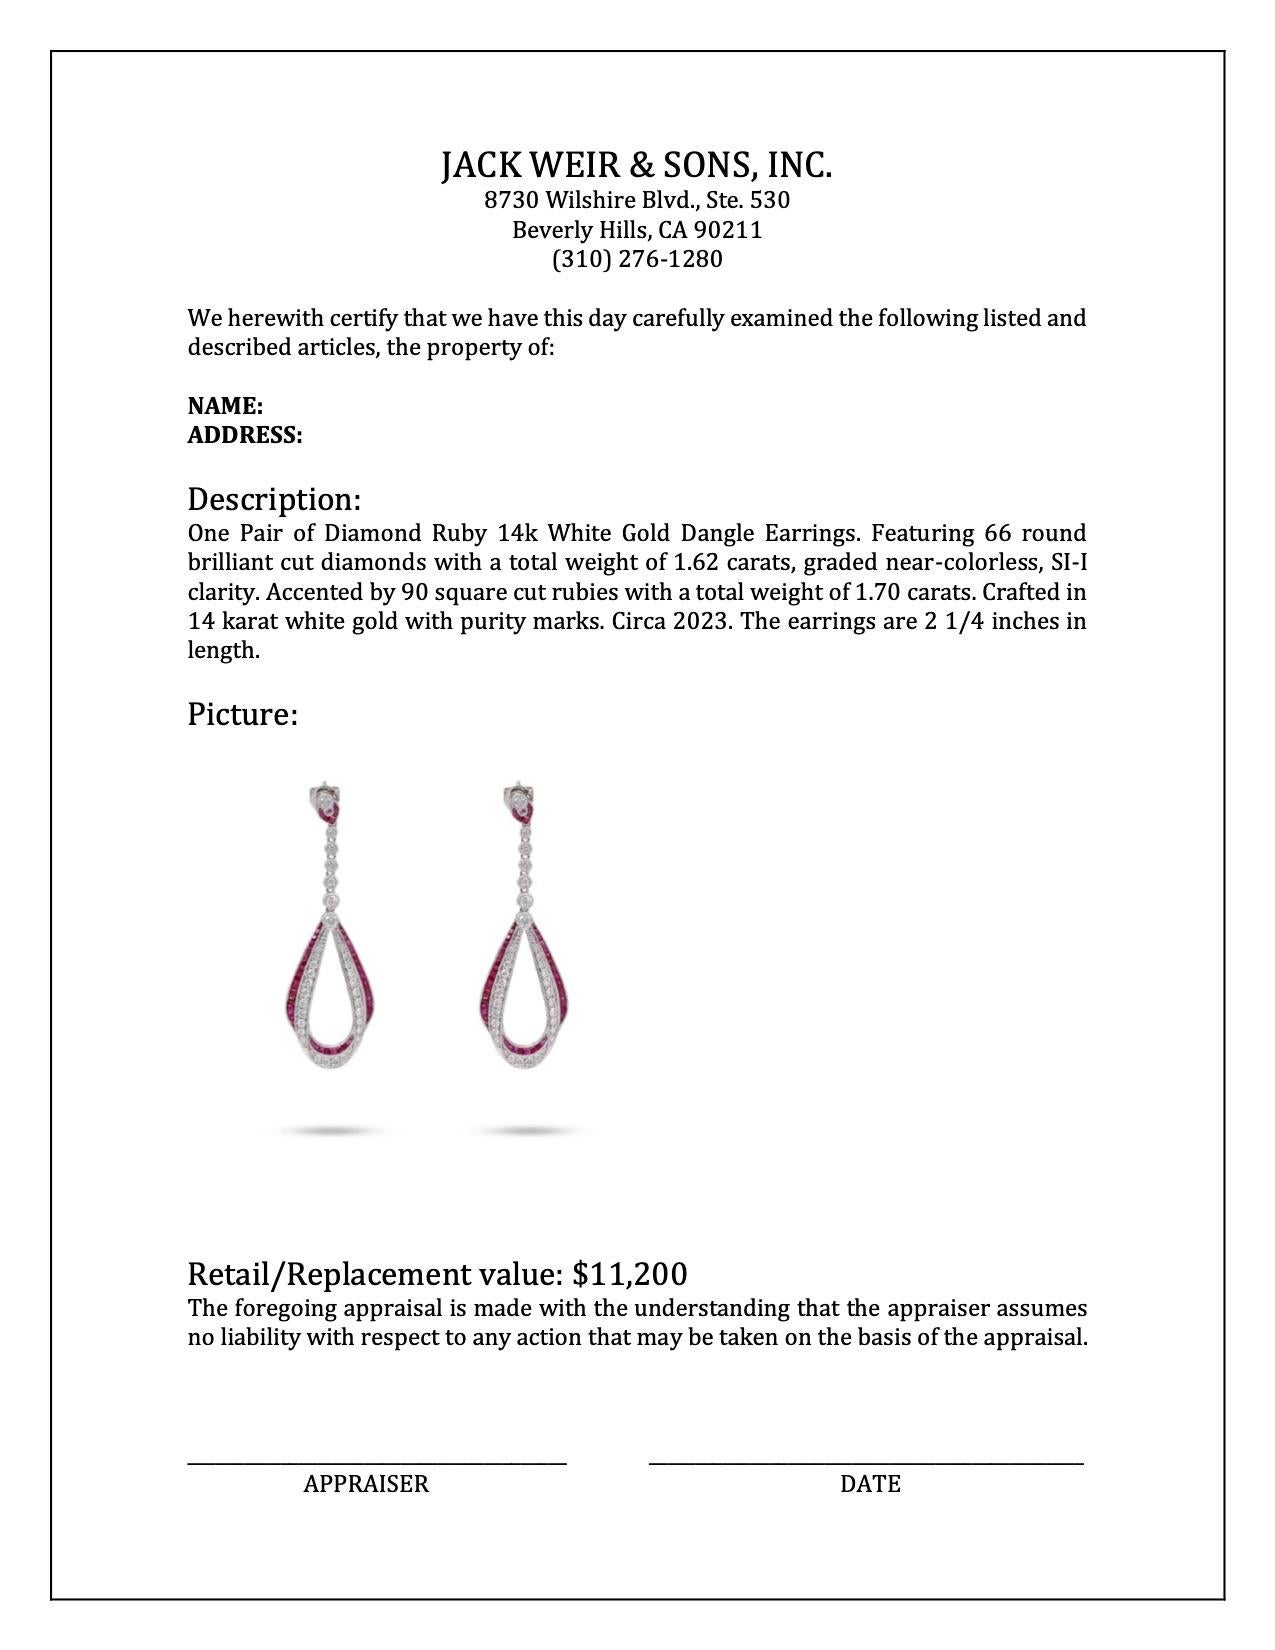 Women's or Men's Diamond Ruby 14k White Gold Dangle Earrings For Sale